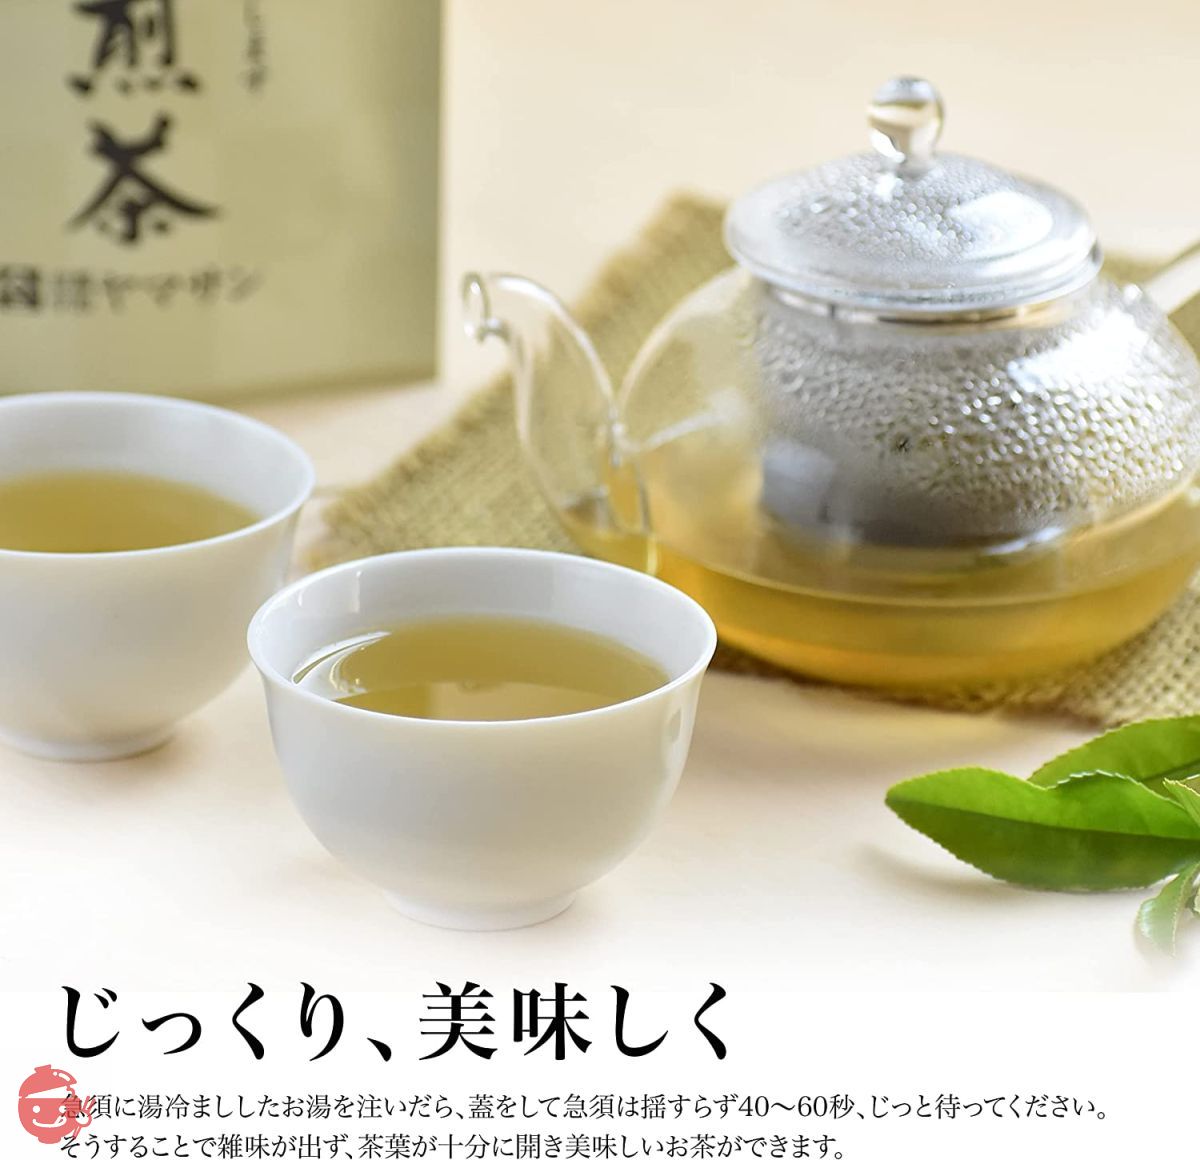 煎茶国产无农药茶叶有机煎茶80g有机冷泡茶礼品礼物绿茶儿茶素茶儿茶素 